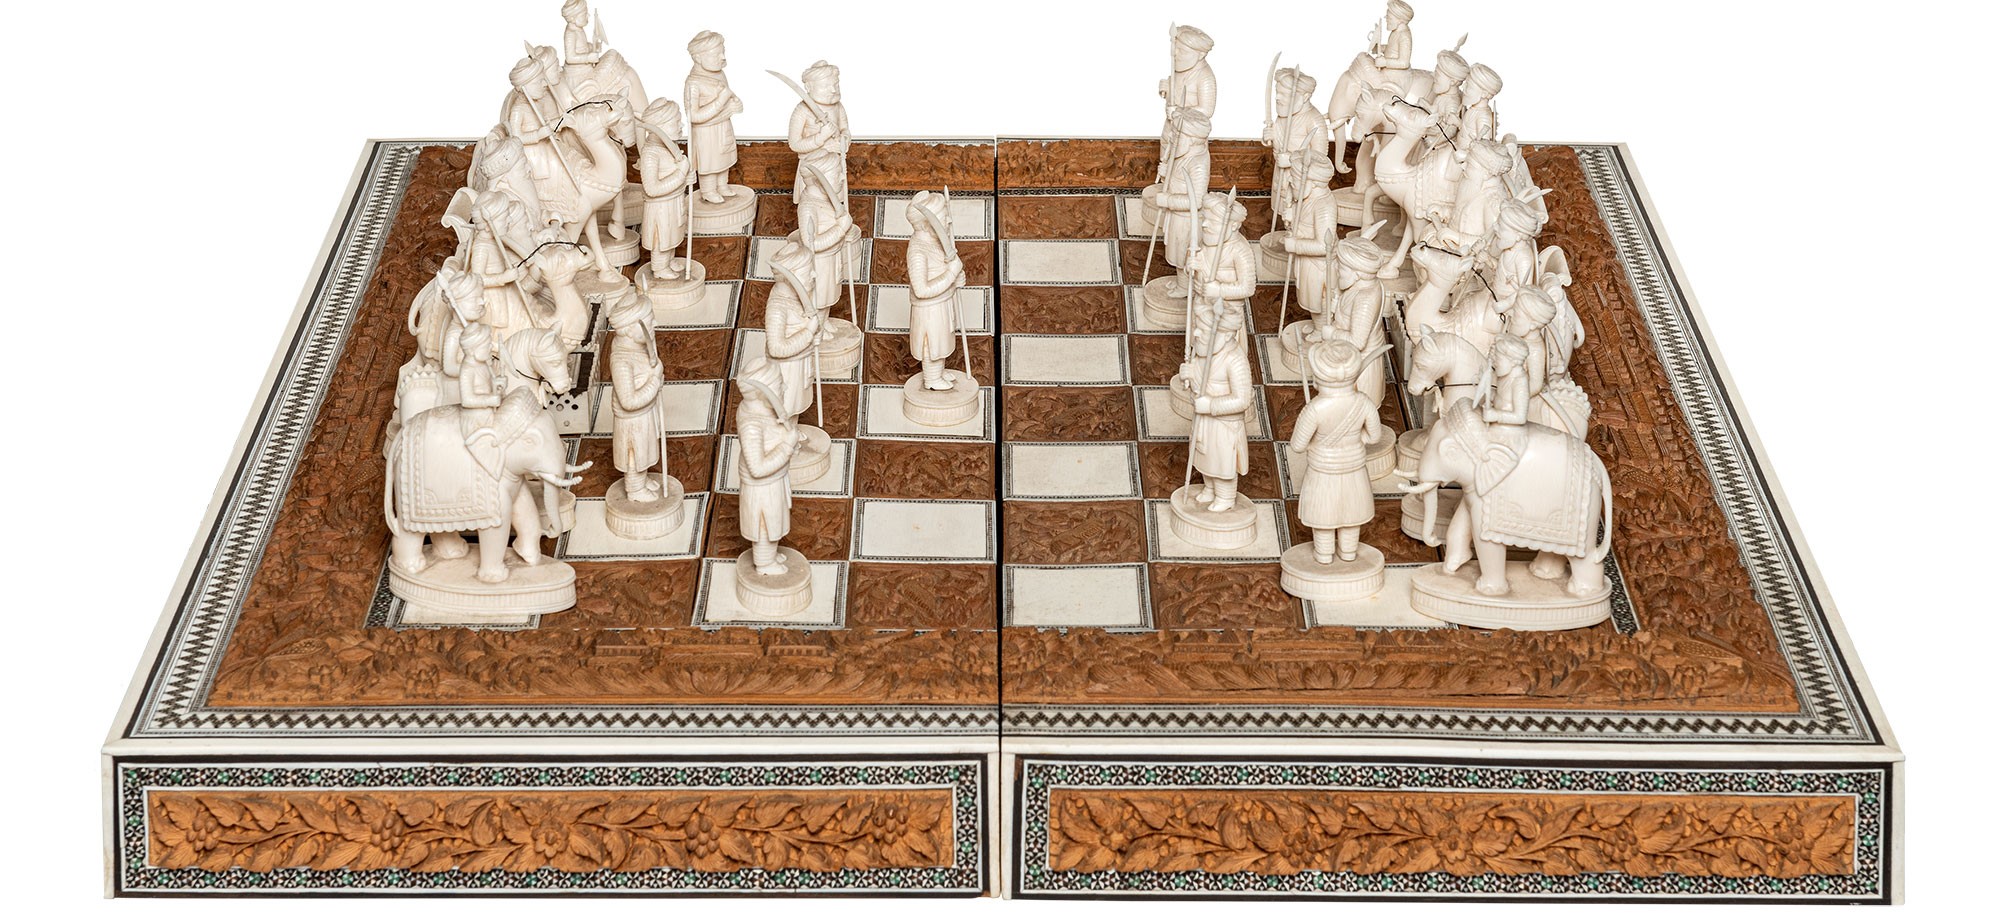 Geschenk Indisches Schachspiel Bismarck